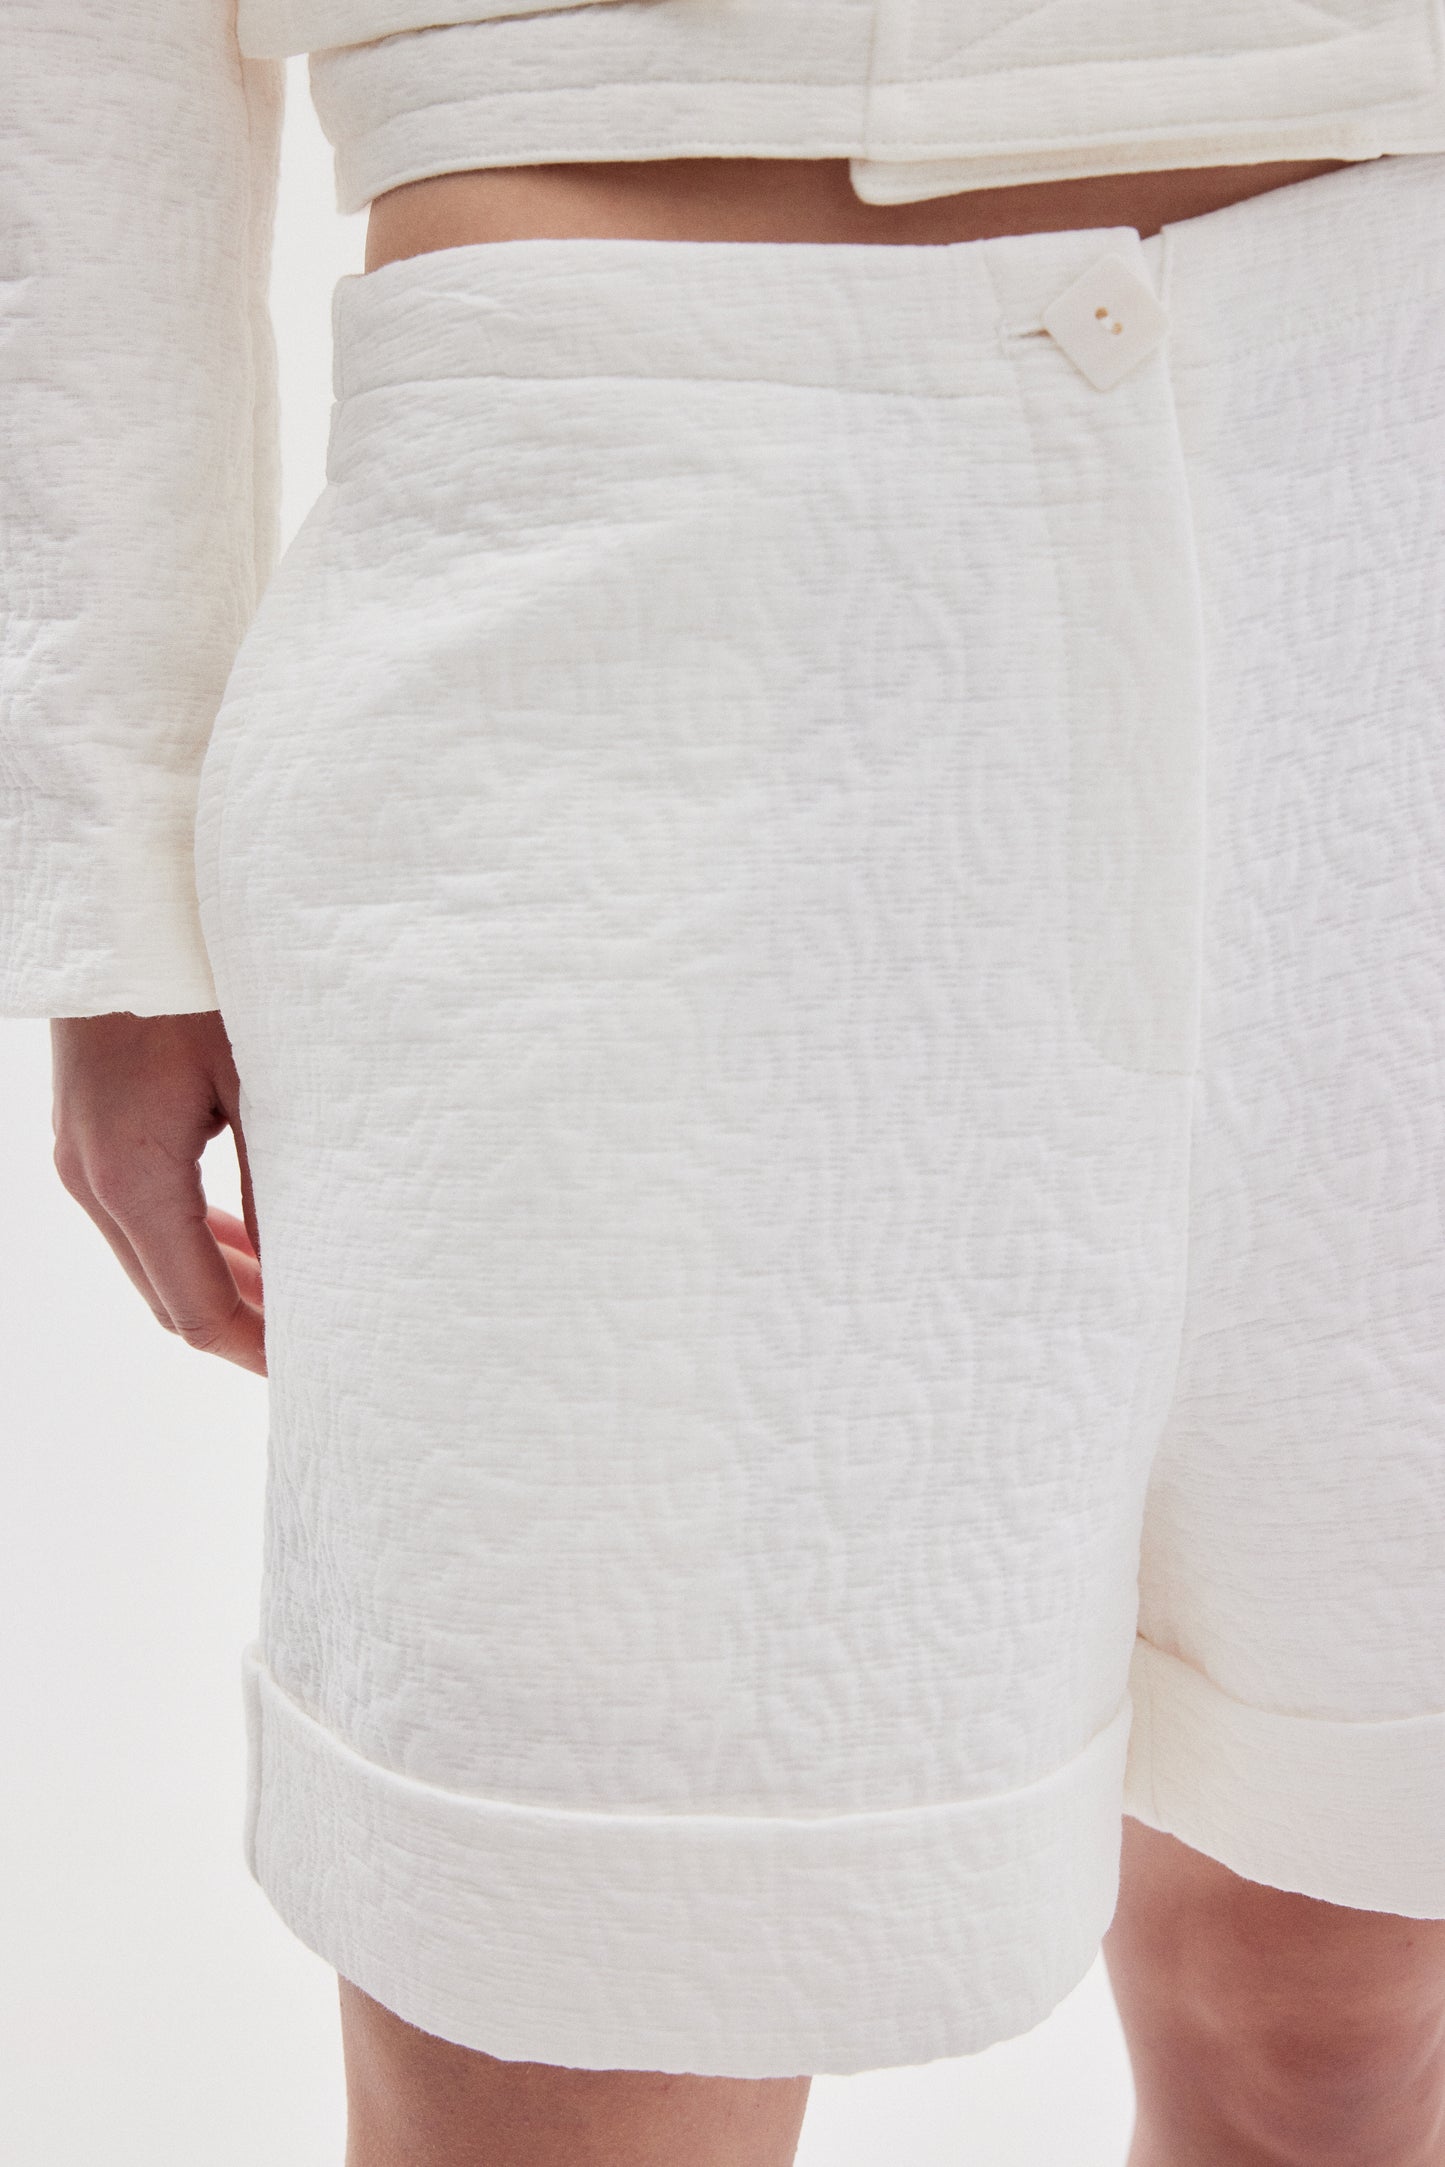 Jacquard Folded Shorts, White